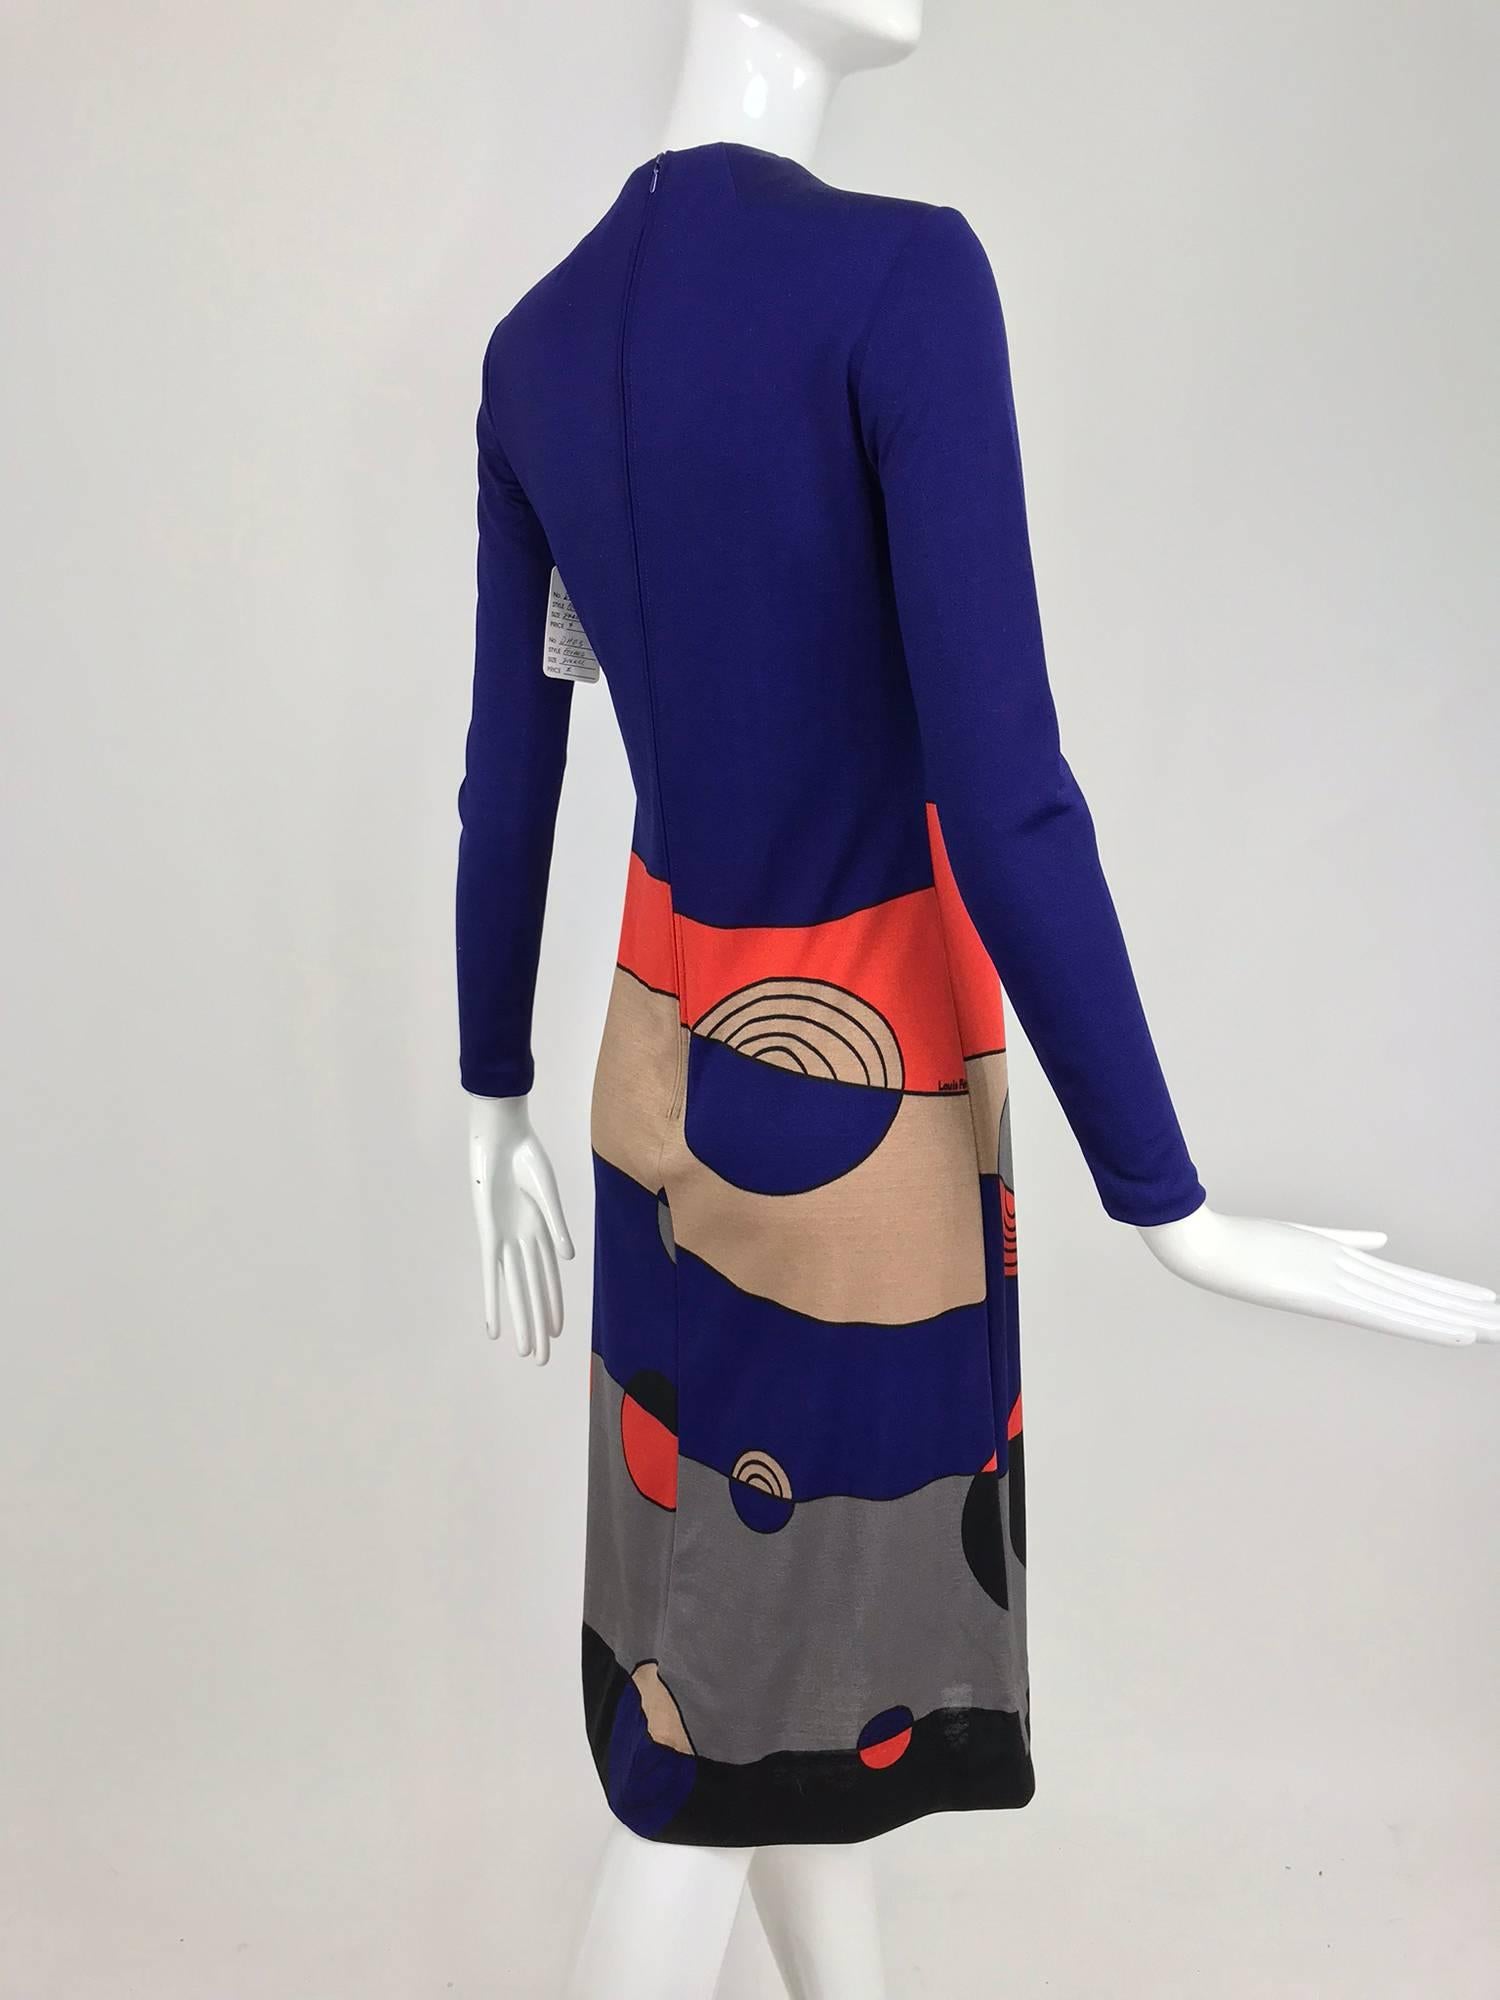 Louis Feraud Op Art Mod print jersey dress 1960s  3